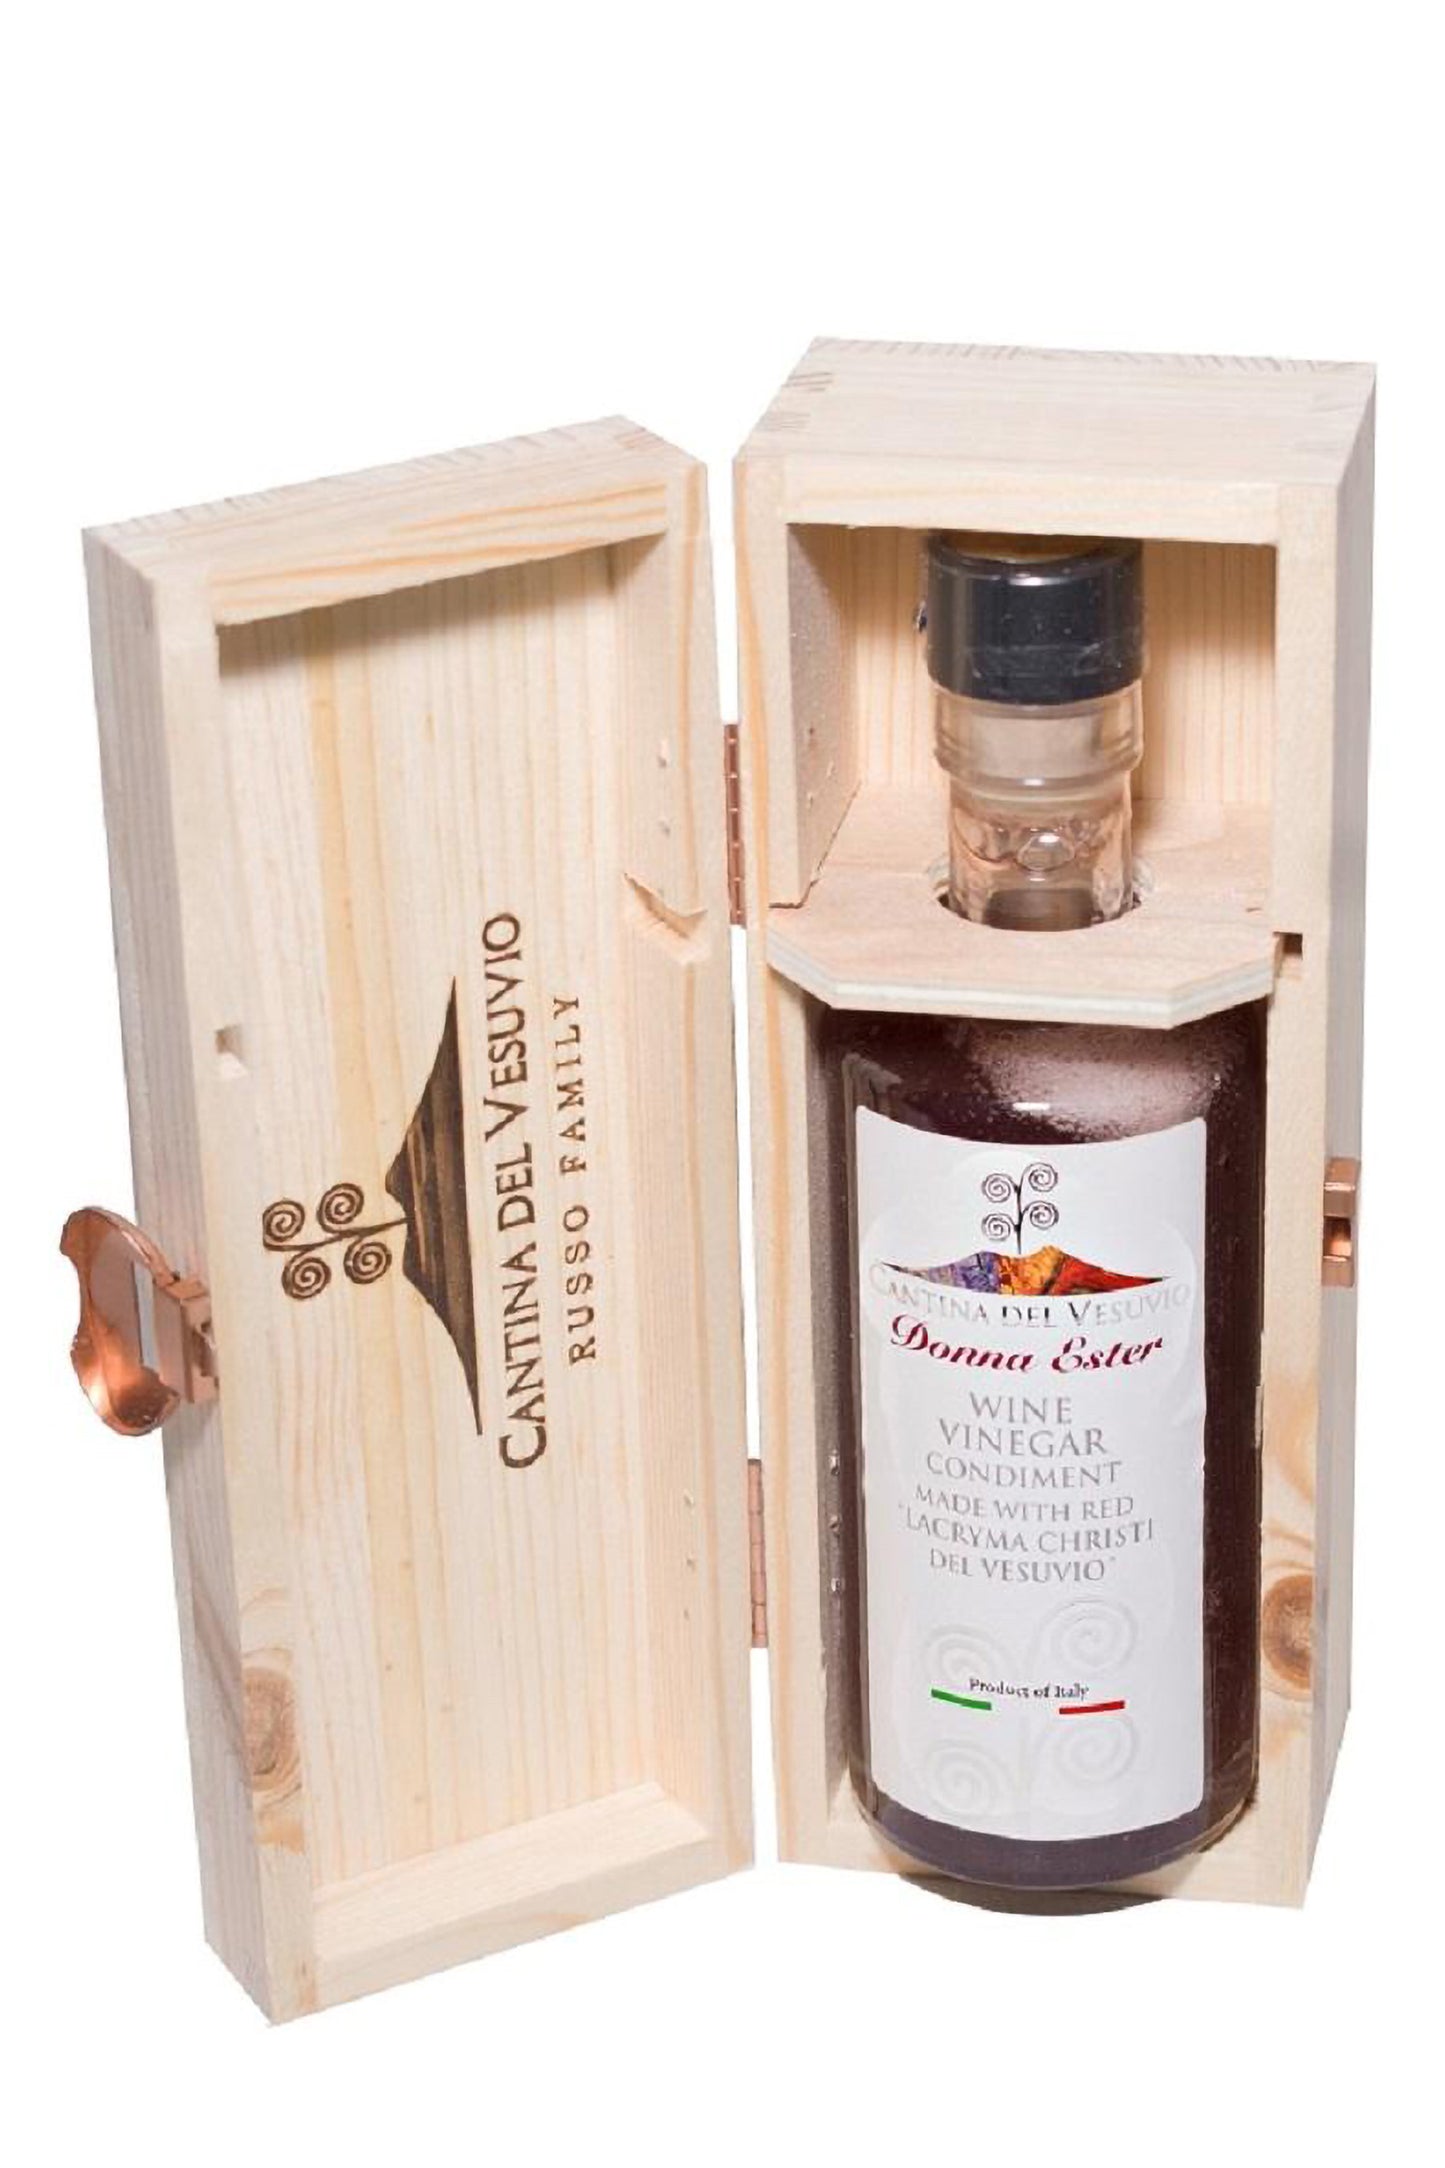 Wine Vinegar Condiment from Red Vesuvio Lacryma Christi DOC "Donna Ester"